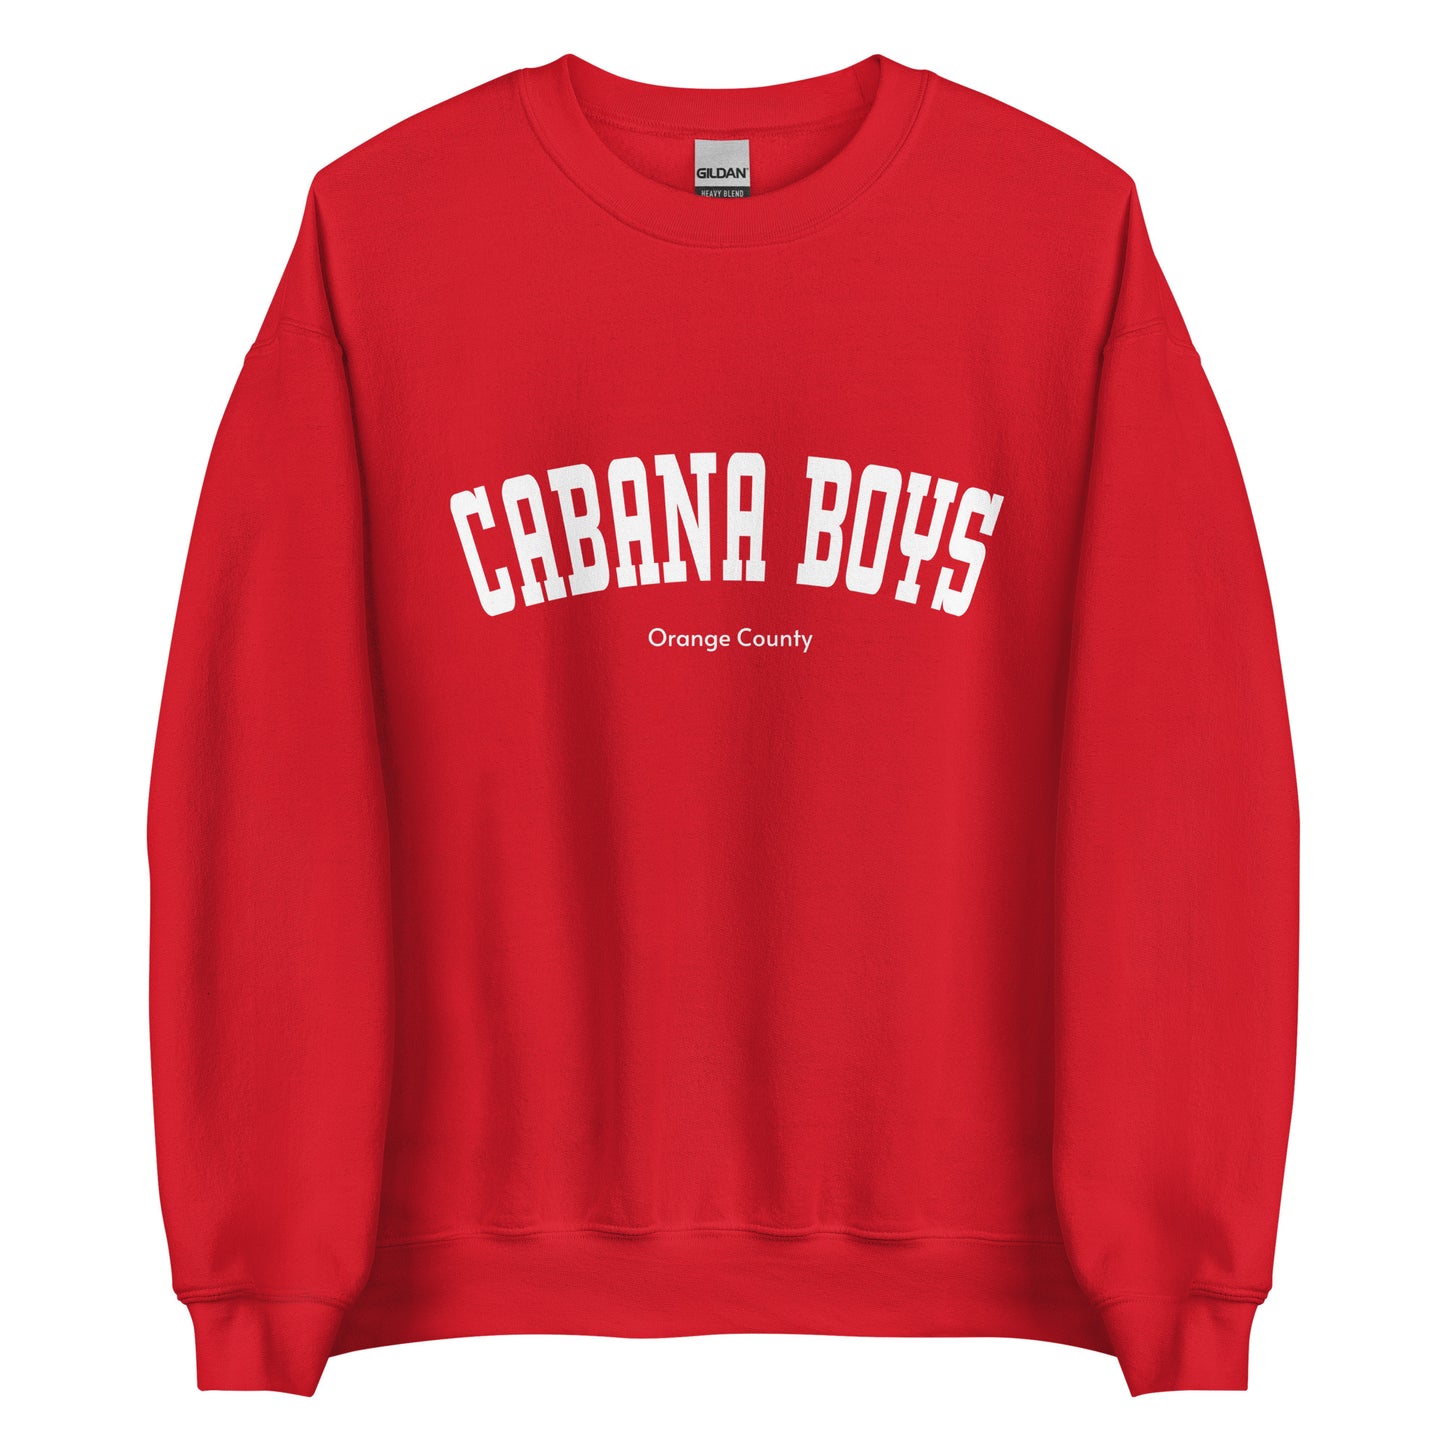 Cabana Boys Orange County Unisex Sweatshirt